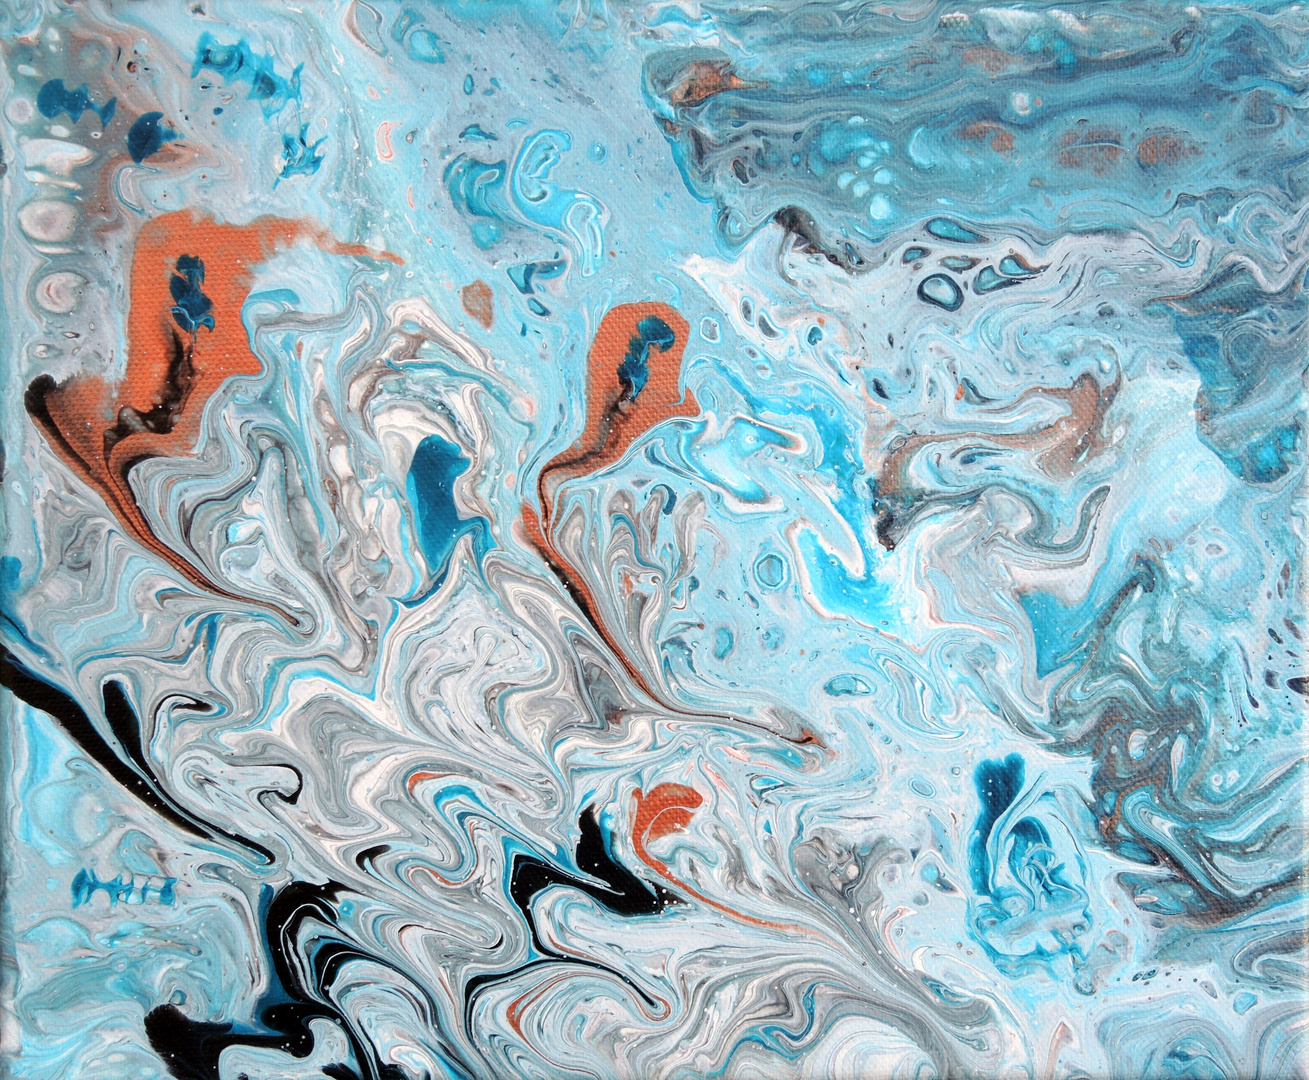 Fluid Painting - Abstrakte Malerei in Acryl